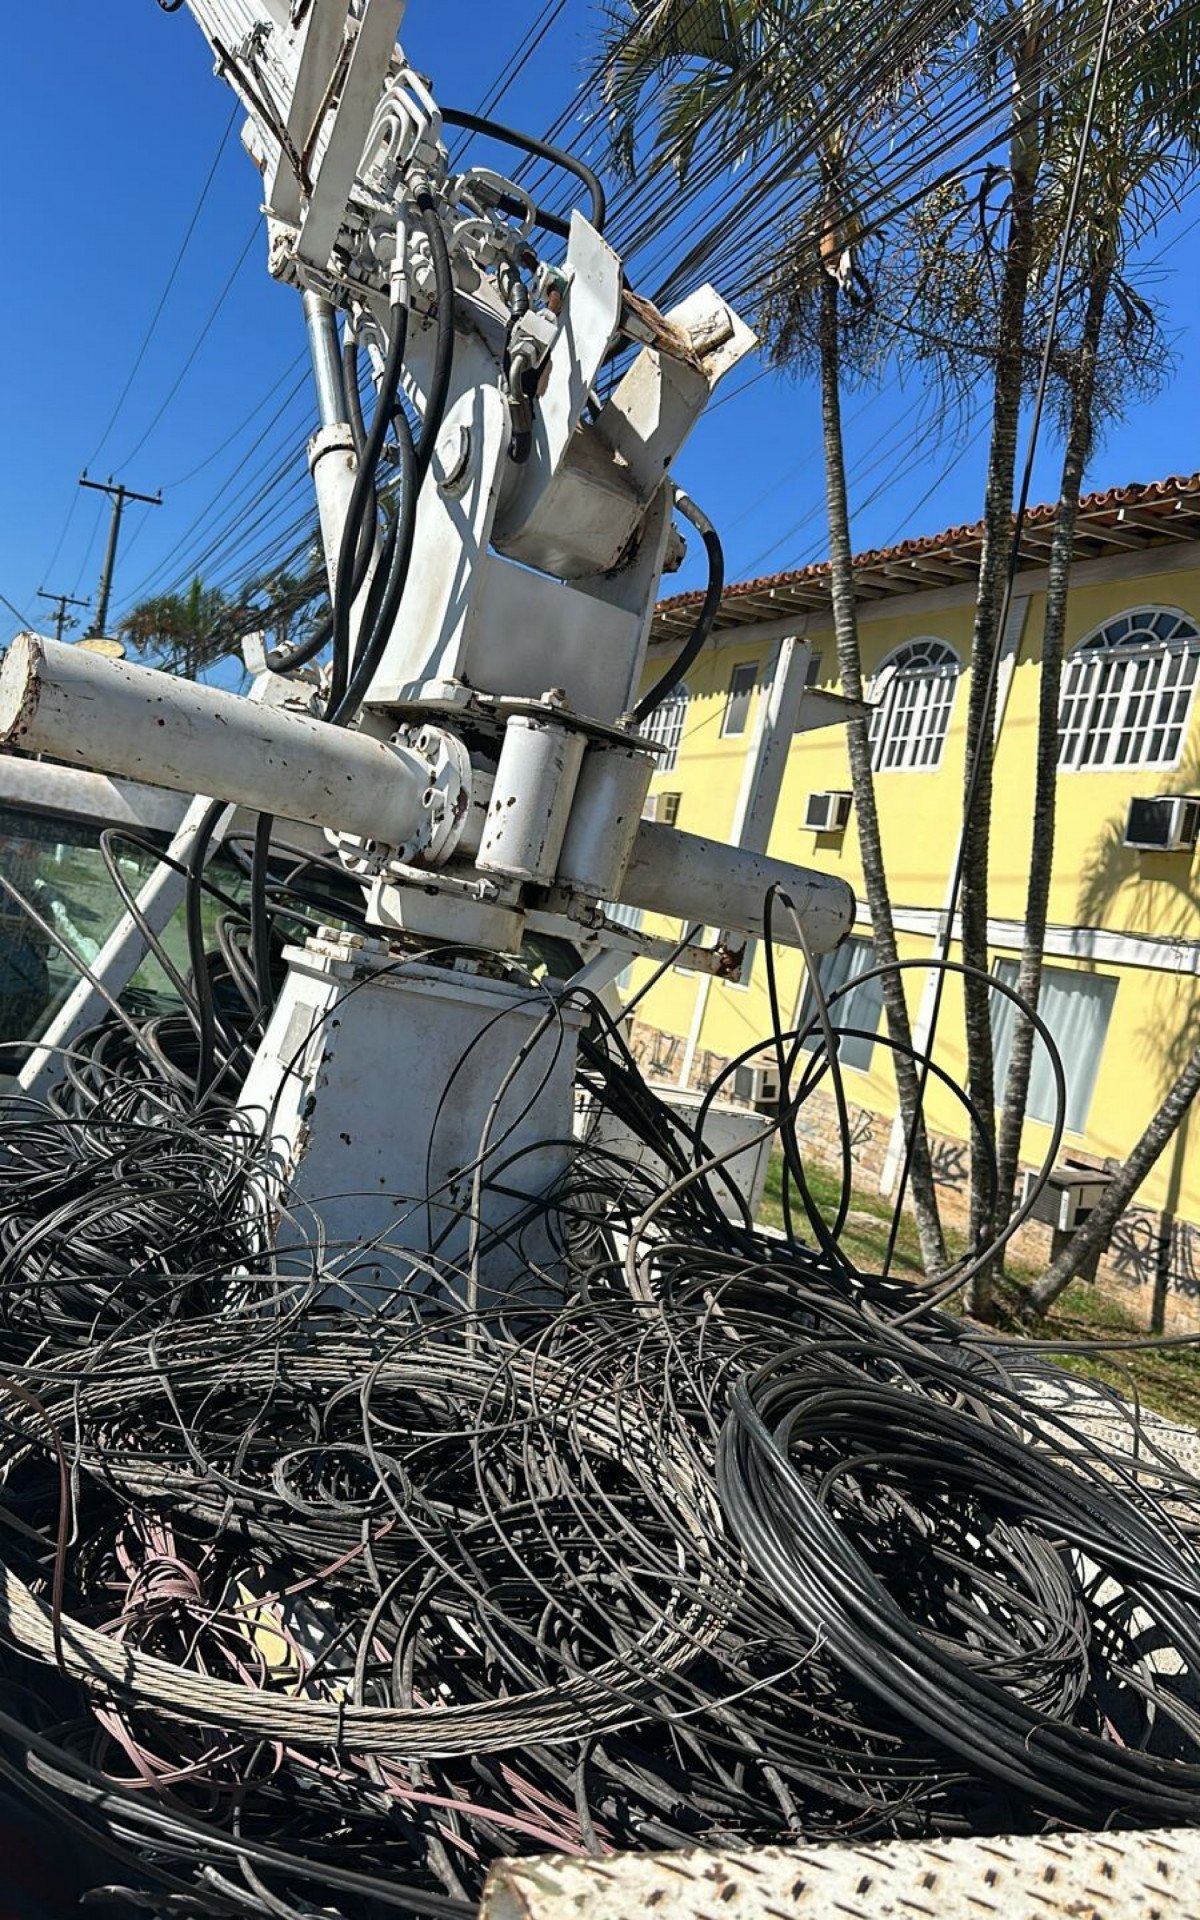 Mais de 3 toneladas de fios em excesso são retiradas de postes em Búzios em combate à poluição visual | Búzios